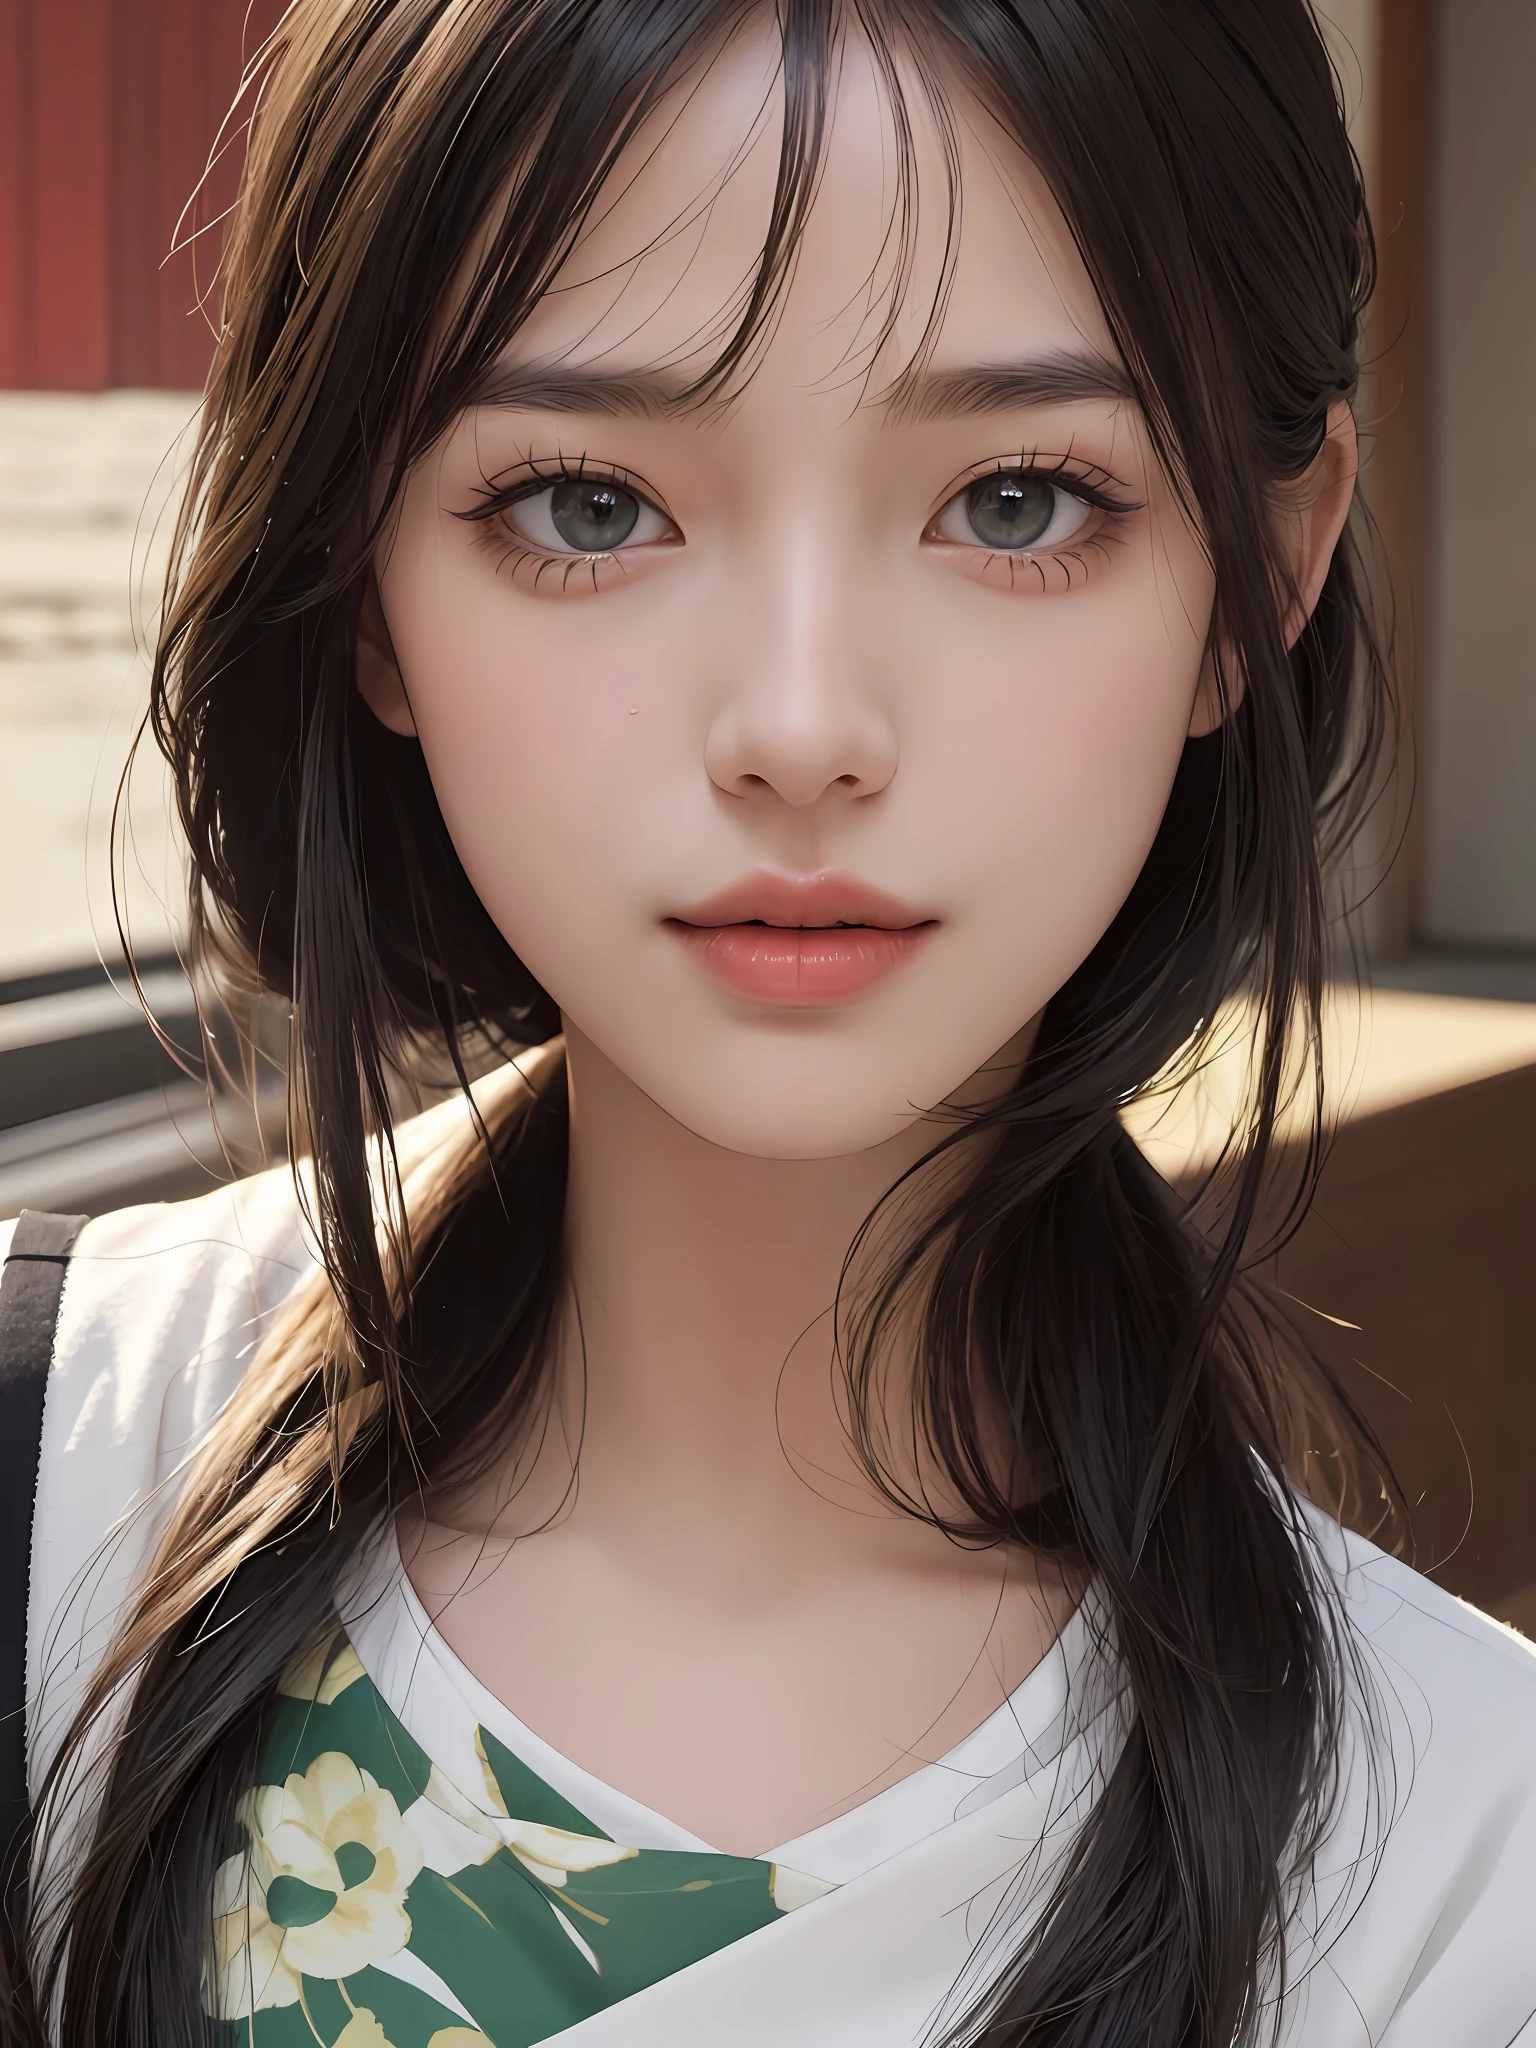 шедевр, Лучшее качество изображения, высокое качество, красивая девушка, Японский, Японский school girl, популярный корейский макияж, подробный, опухшие глаза, подробный eyes, подробный skin, Красивая кожа, ultra высокое разрешение, (Реальность: 1.4), Очень красивый, немного помолодевшее лицо, Красивая кожа, стройный, (ультра реалистичный), (Иллюстрация), (высокое разрешение), (8К), (highly подробный), (best Иллюстрация), (beautifully подробный eyes), (super подробный), (обои), (подробный face), Глядя на зрителя, мелкие детали, подробный face, чистое лицо_v1, улыбается, глядя прямо перед собой, глядя прямо перед собой, угол от талии вверх, реалистичное фото, яркое освещение, профессиональное освещение, черные волосы (немного зелени), длинные волосы, темные руины, большая красная луна, великолепное красно-черное платье, Зрелая женщина, Длинная стильная челка,